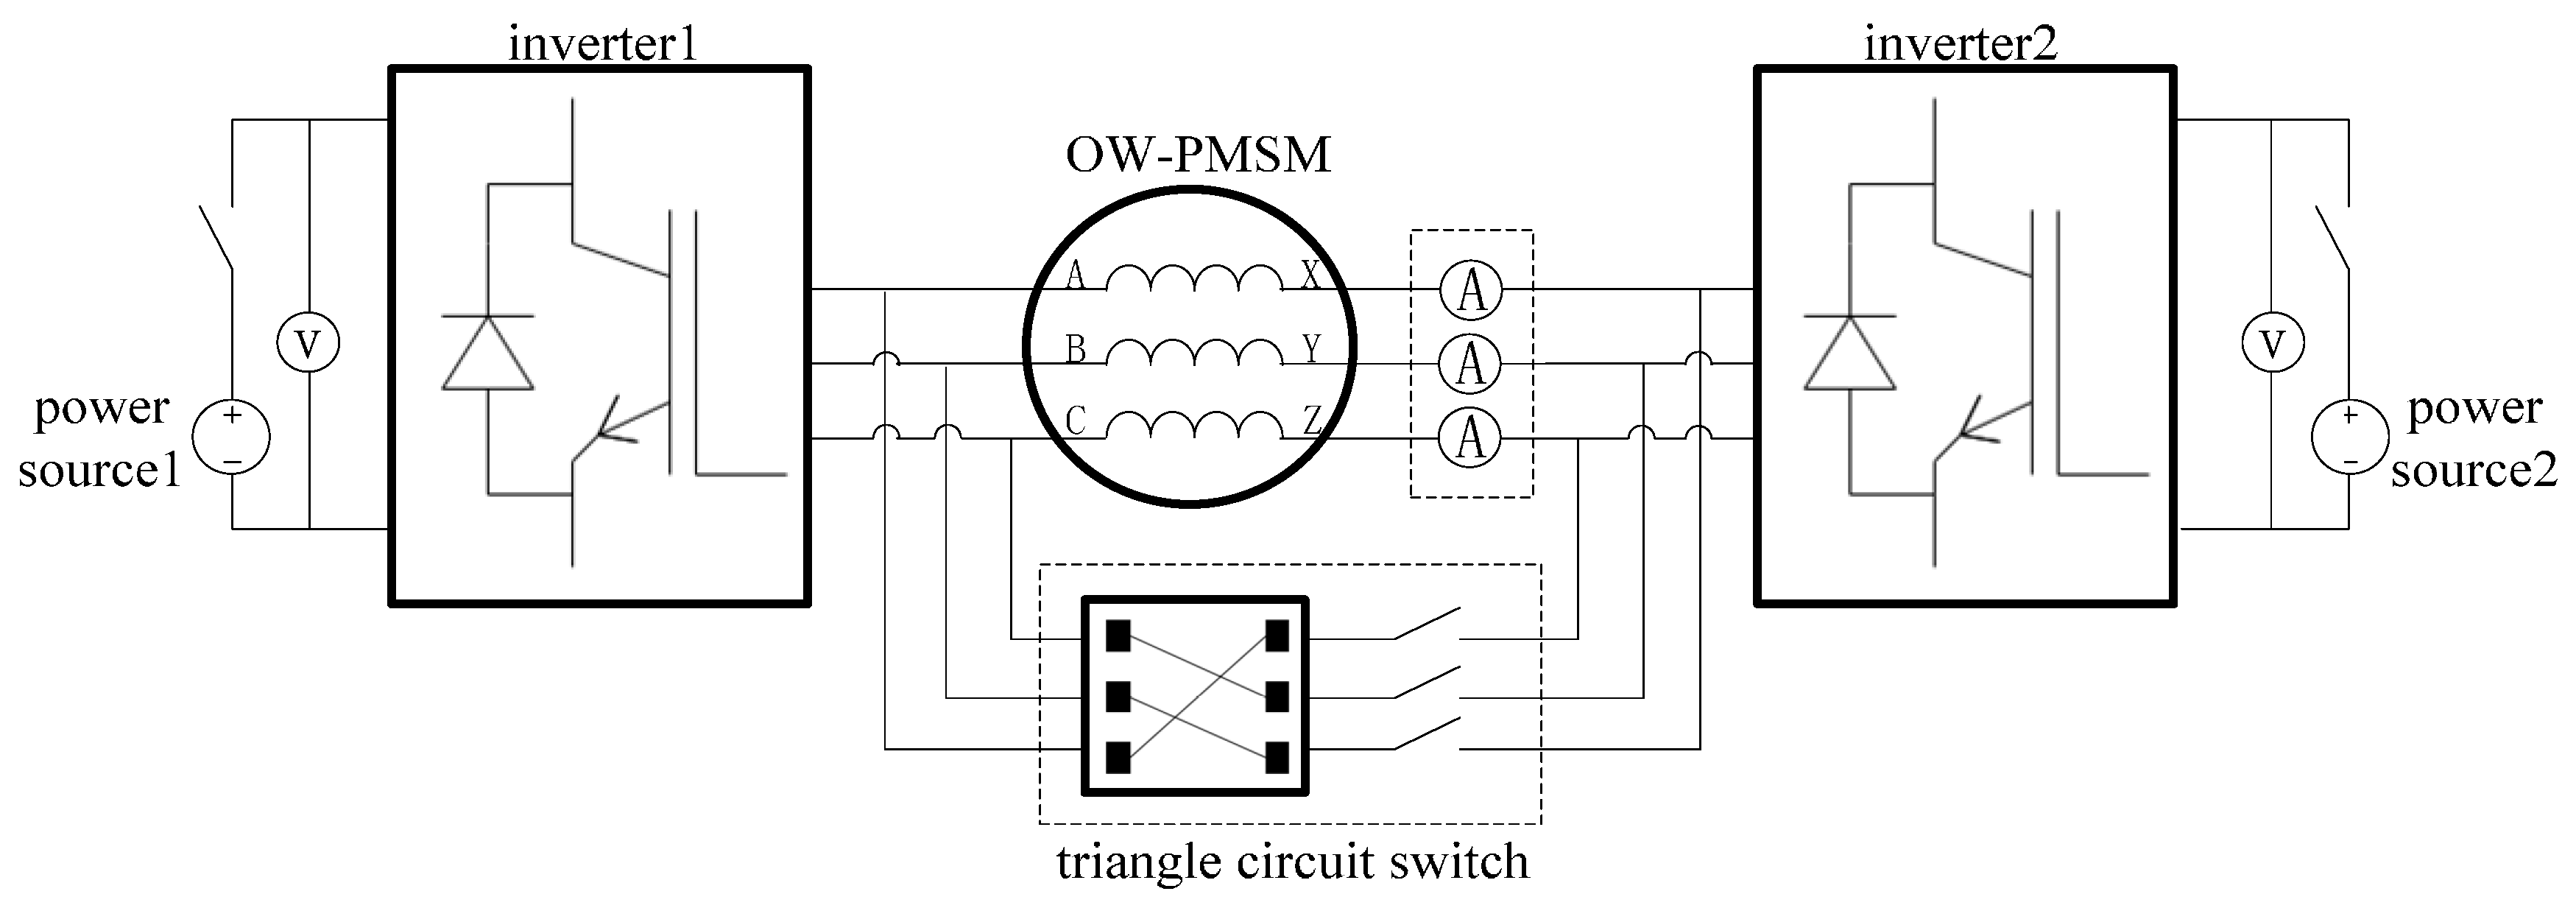 scotts 2546 wiring diagram